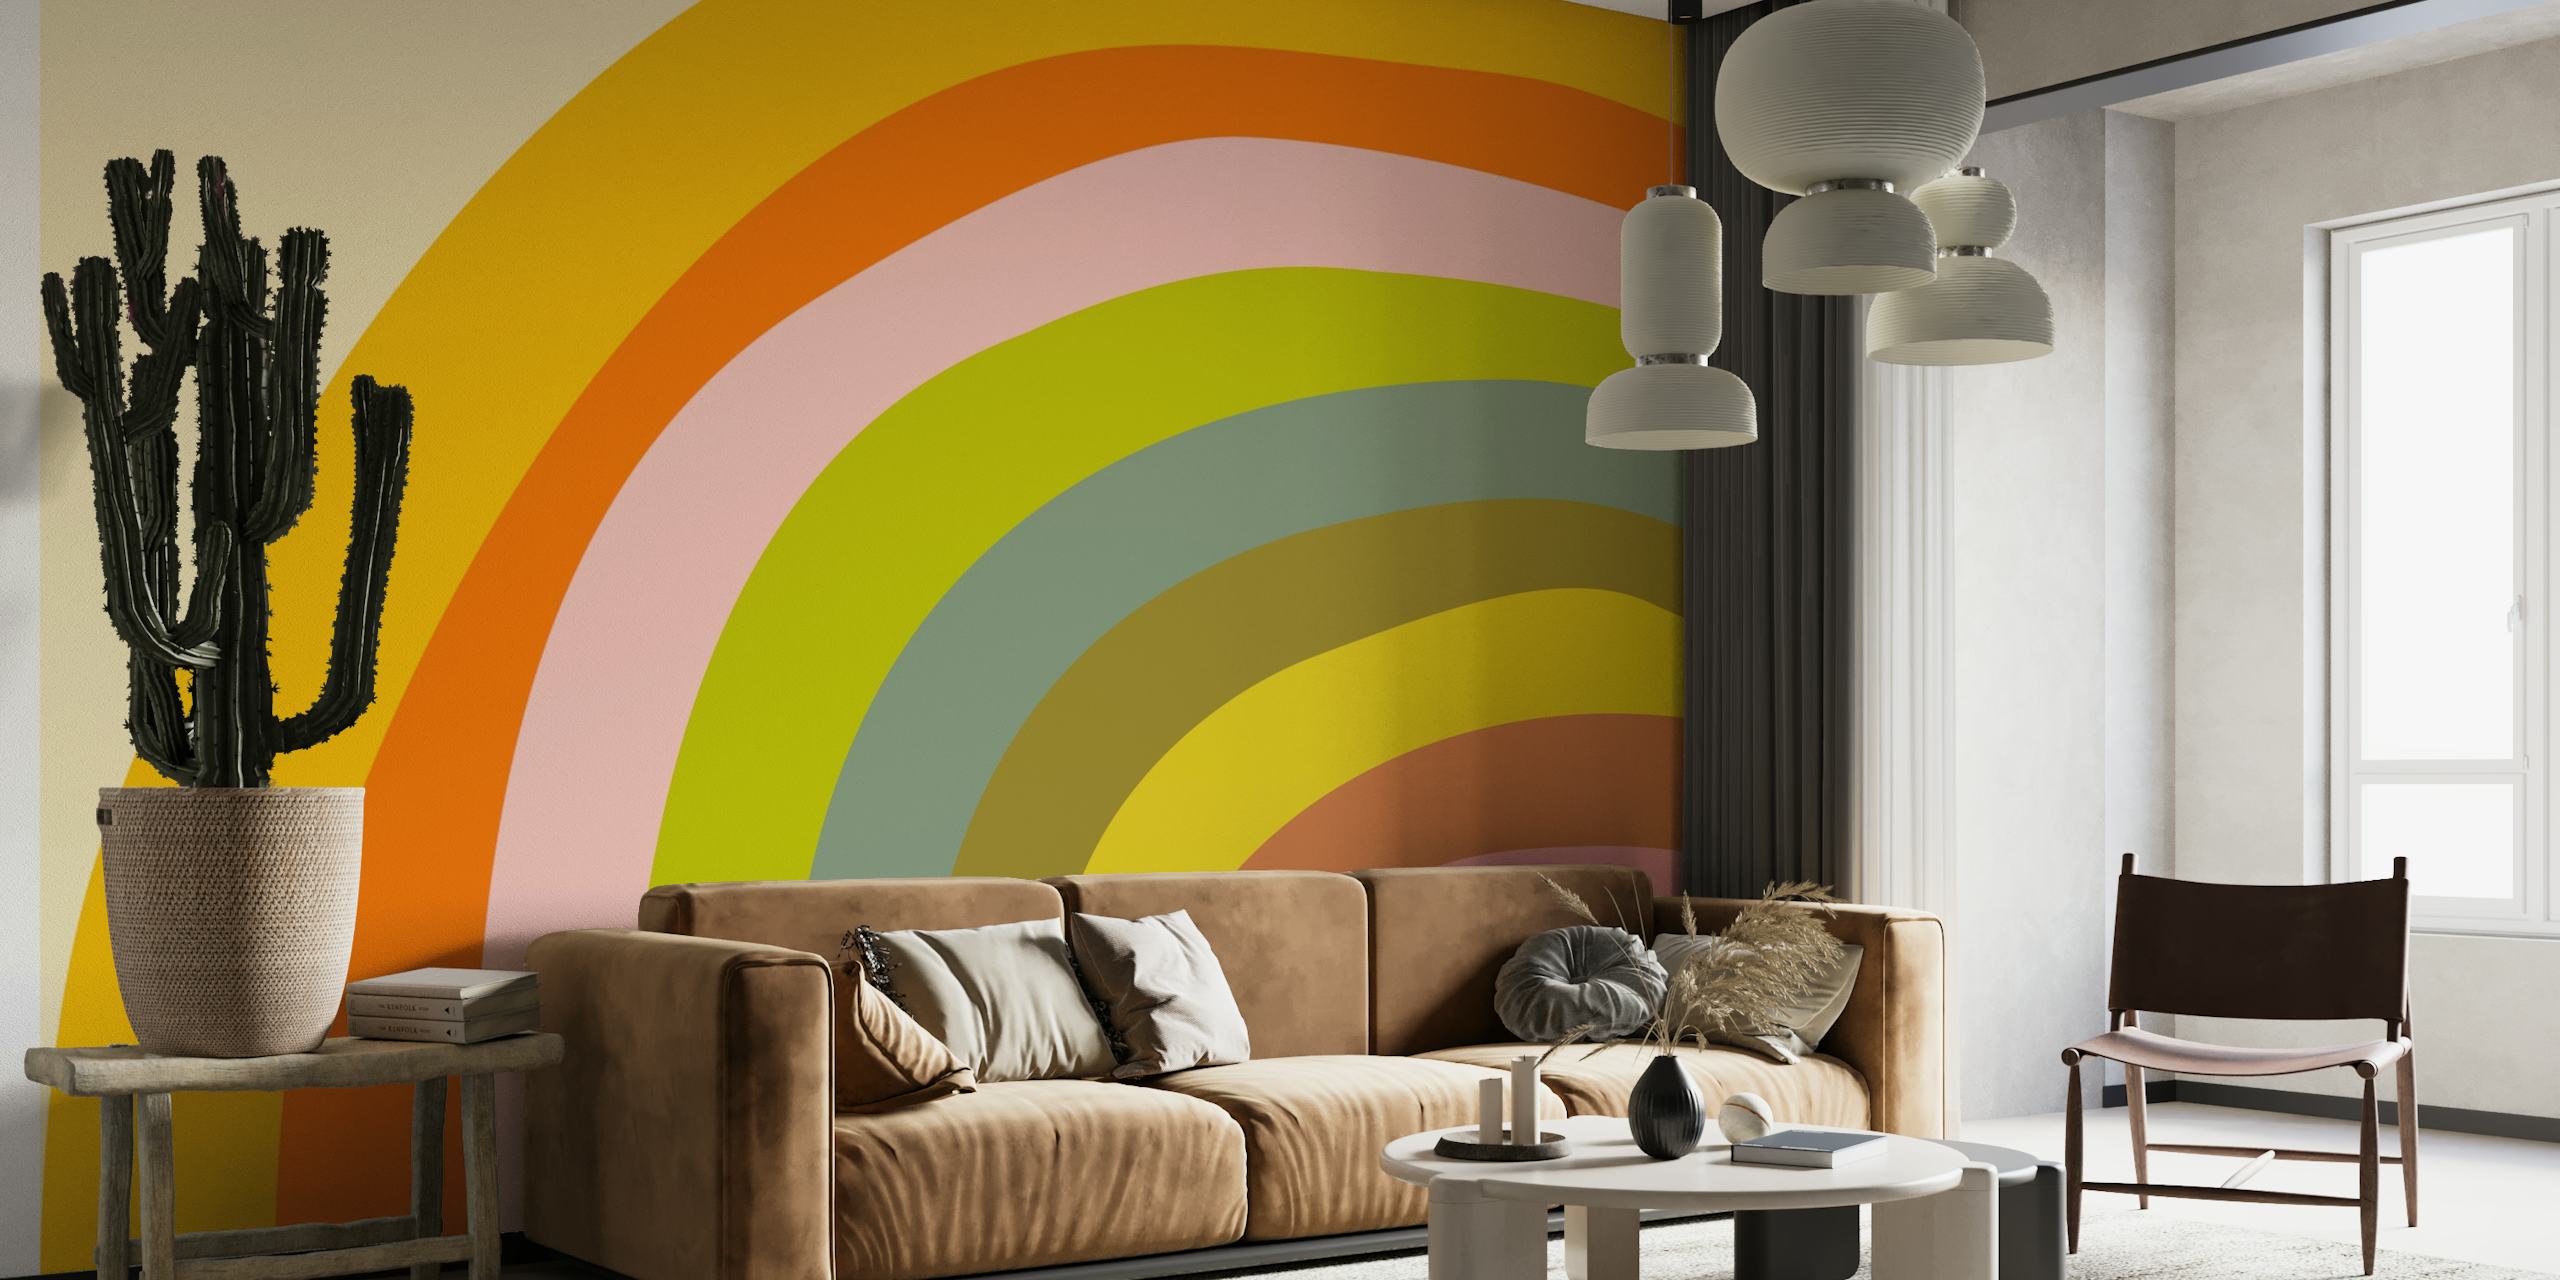 Seinämaalaus, jossa on rohkea ja värikäs abstrakti sateenkaaren kaari lämpimissä ja kylmissä sävyissä.